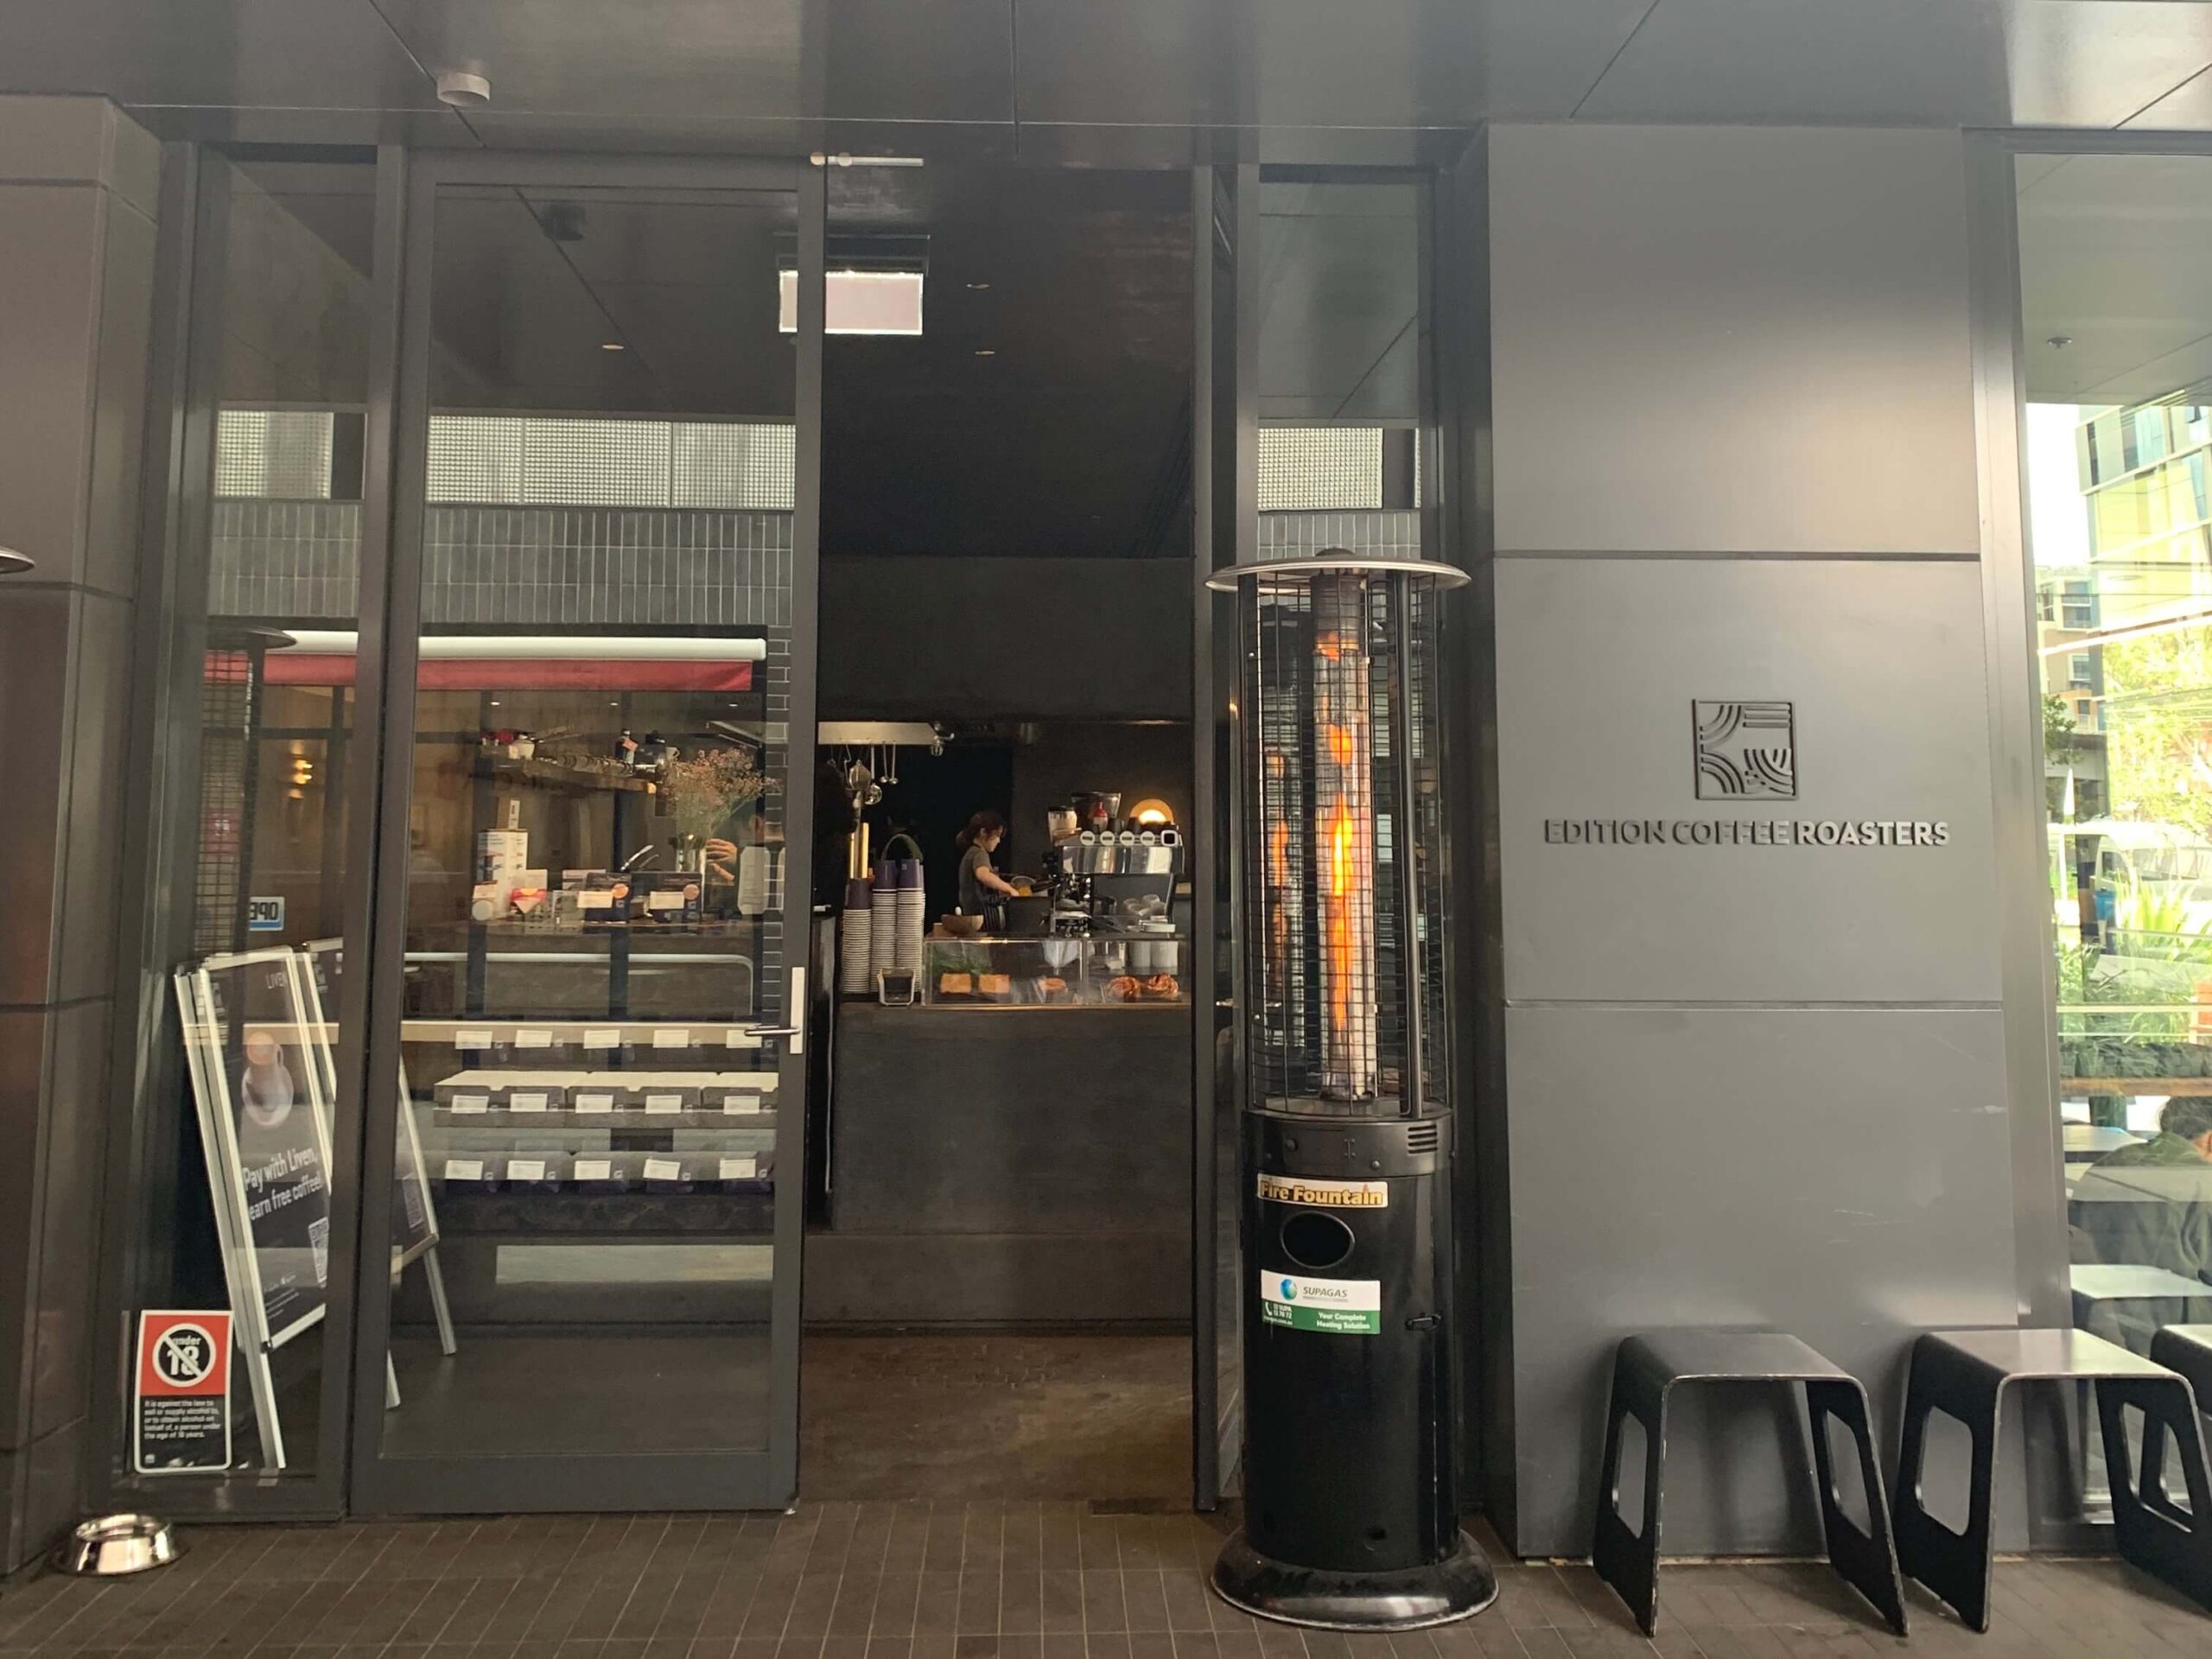 シドニーのカフェ【Edition Coffee Roasters】の外観の様子を撮影した写真